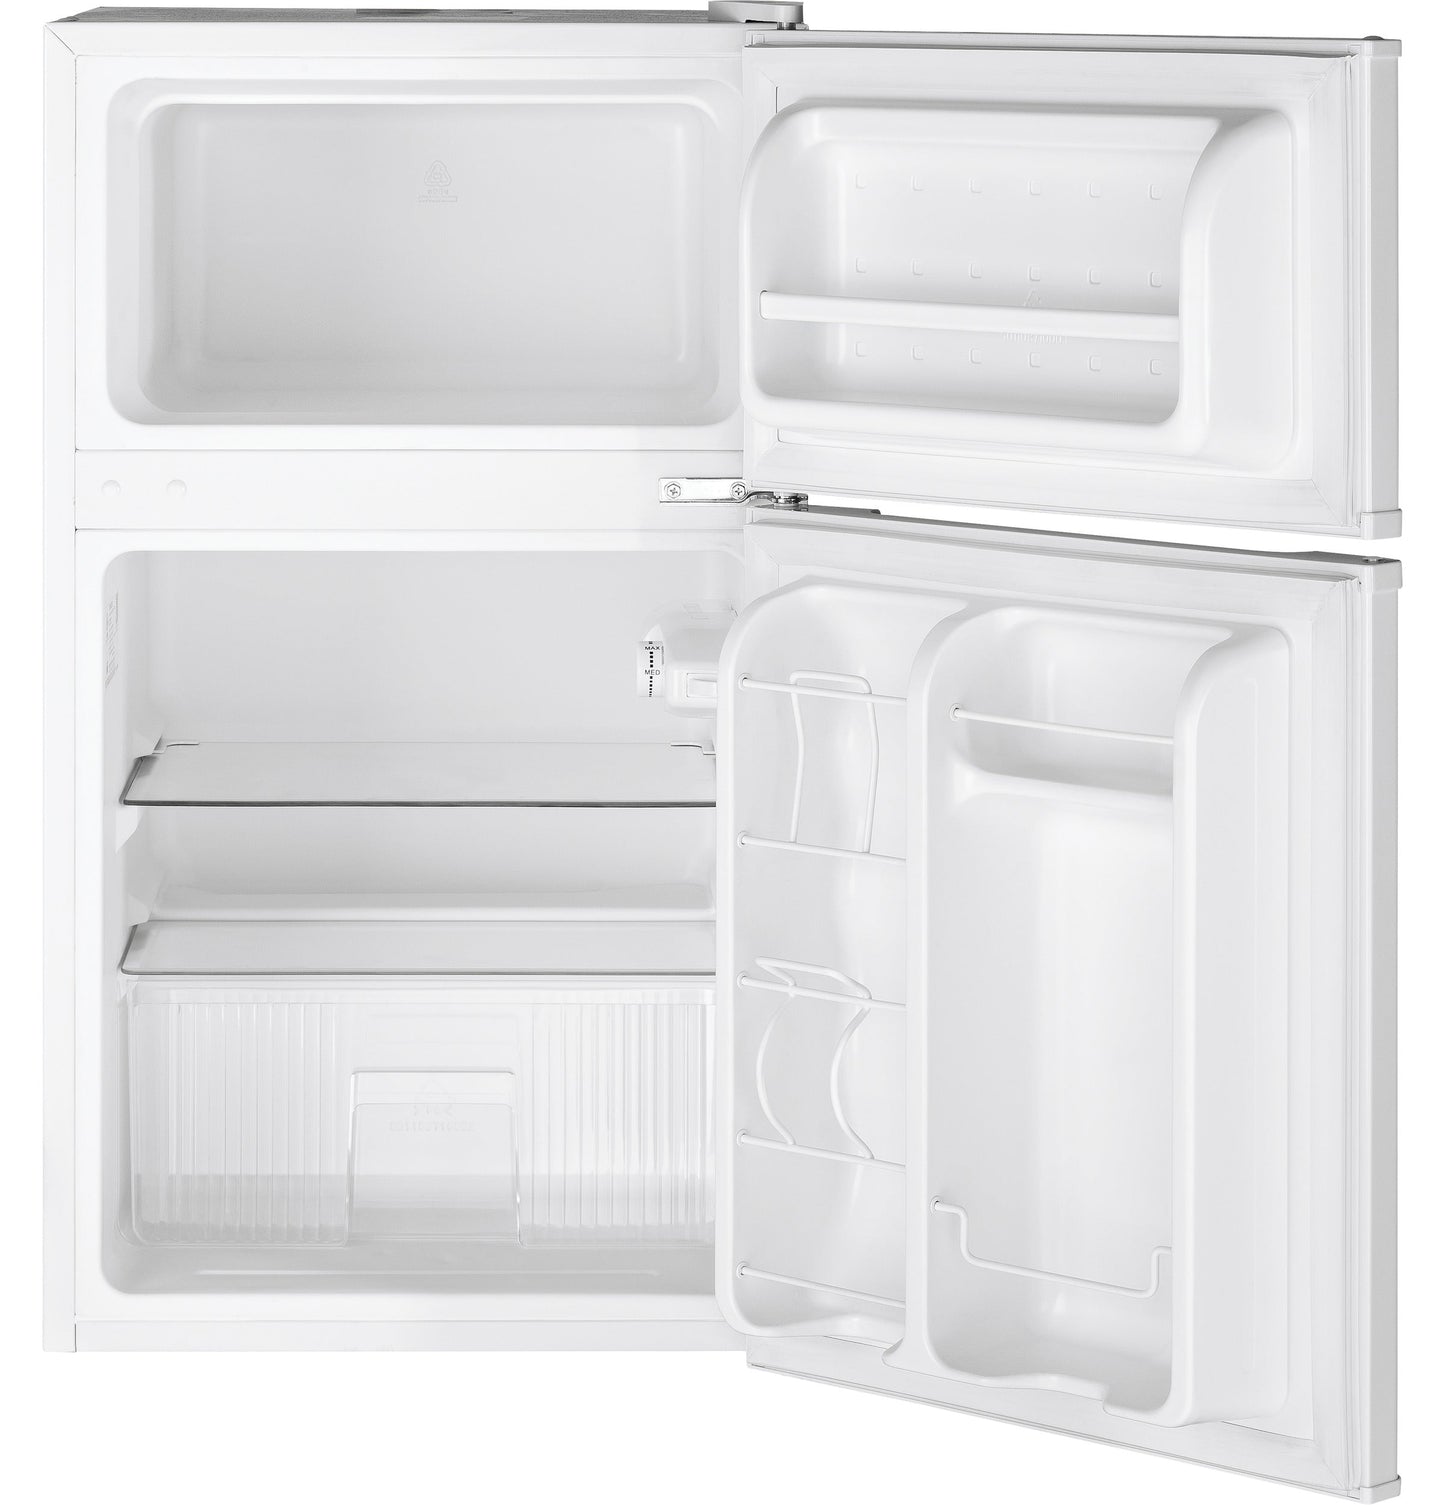 GE 3.1 Cu. Ft. Double Door Compact Refrigerator White - GDE03GGKWW